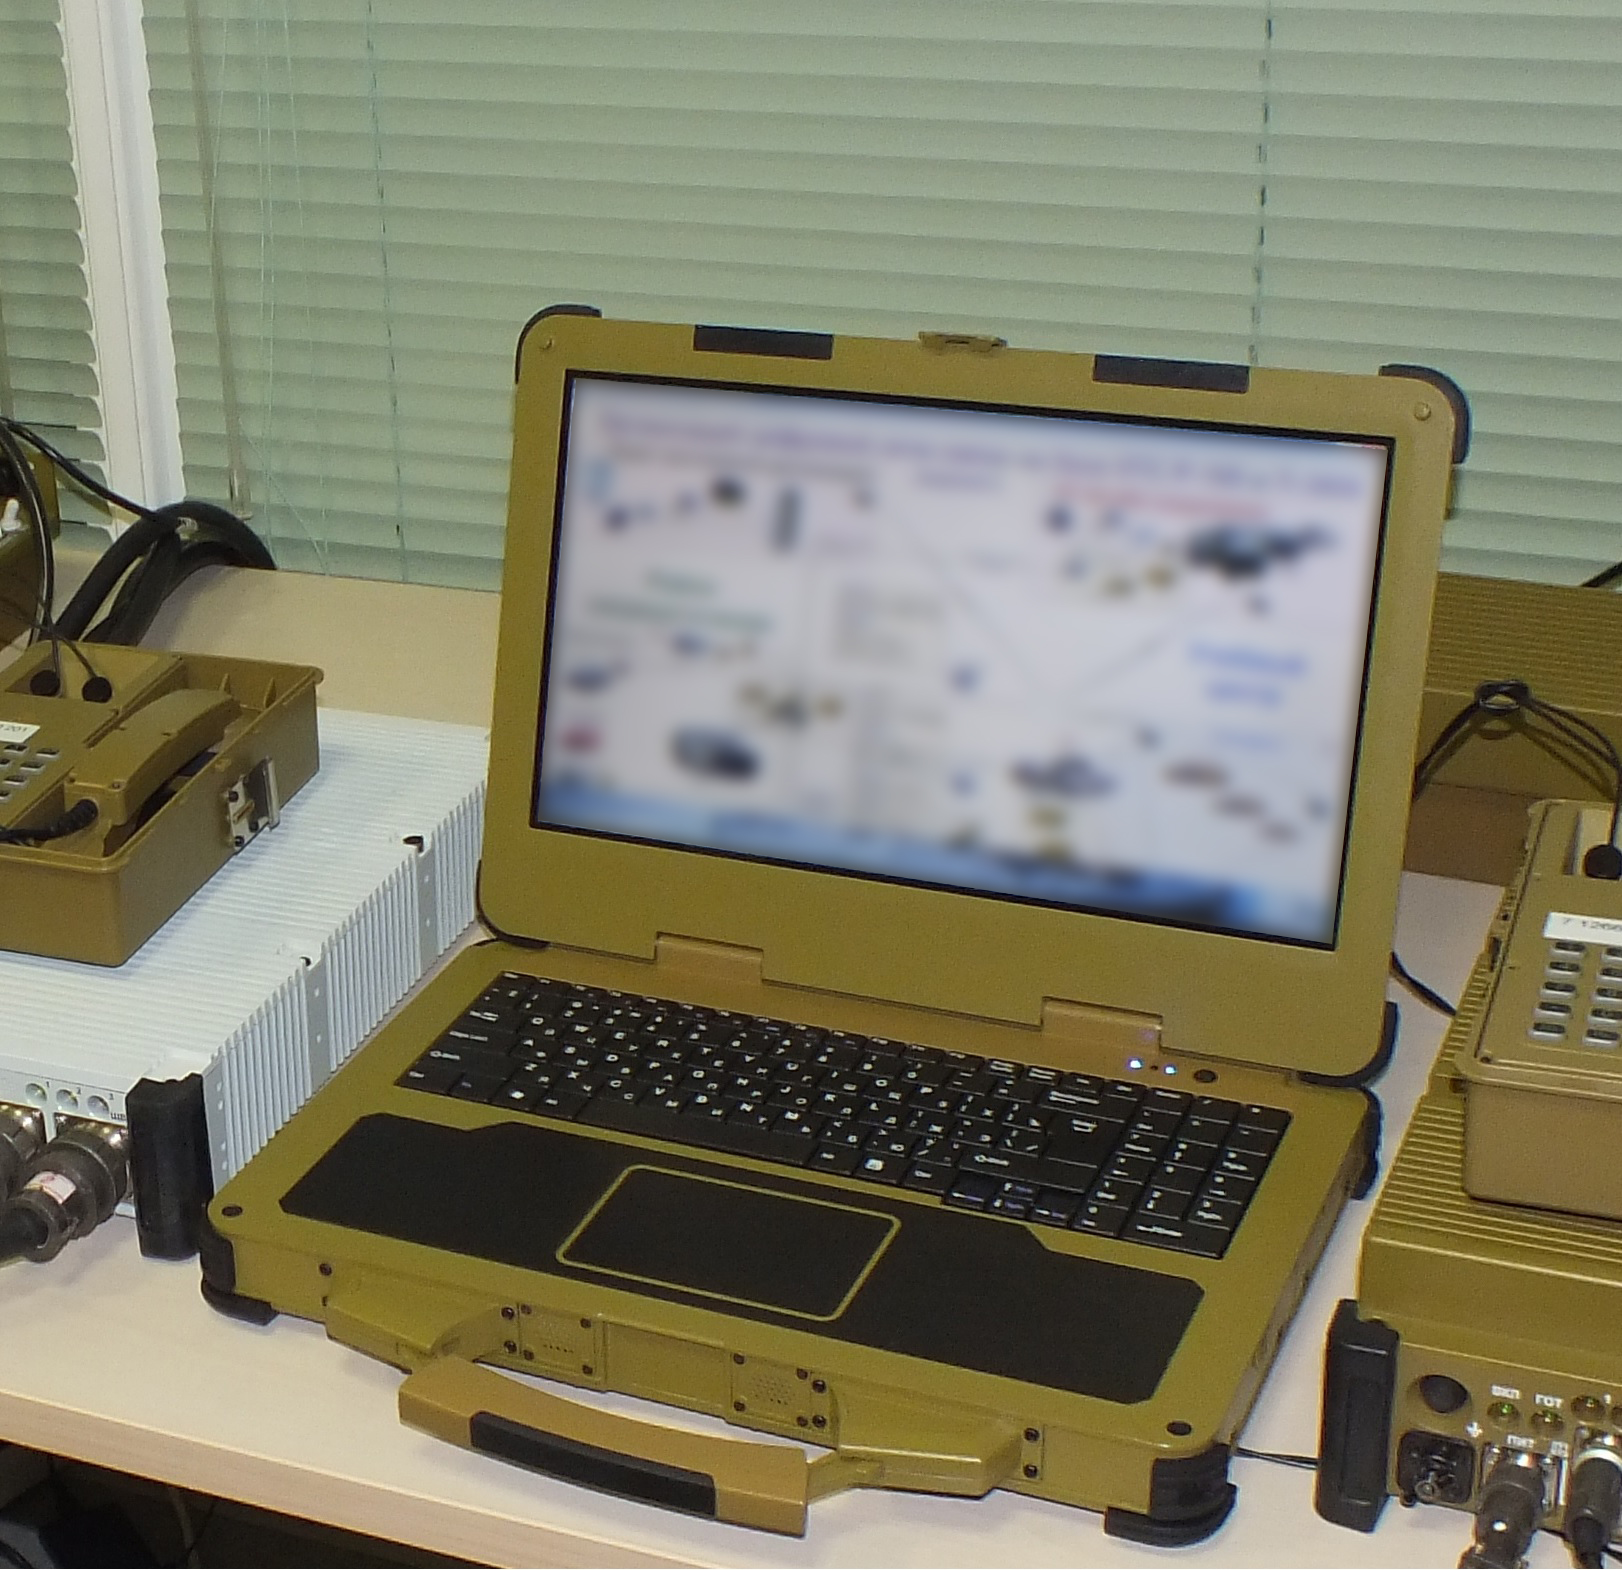 ОПК Ростех в 2016 году выпустит второе поколение сверхнадежных ноутбуков для военных